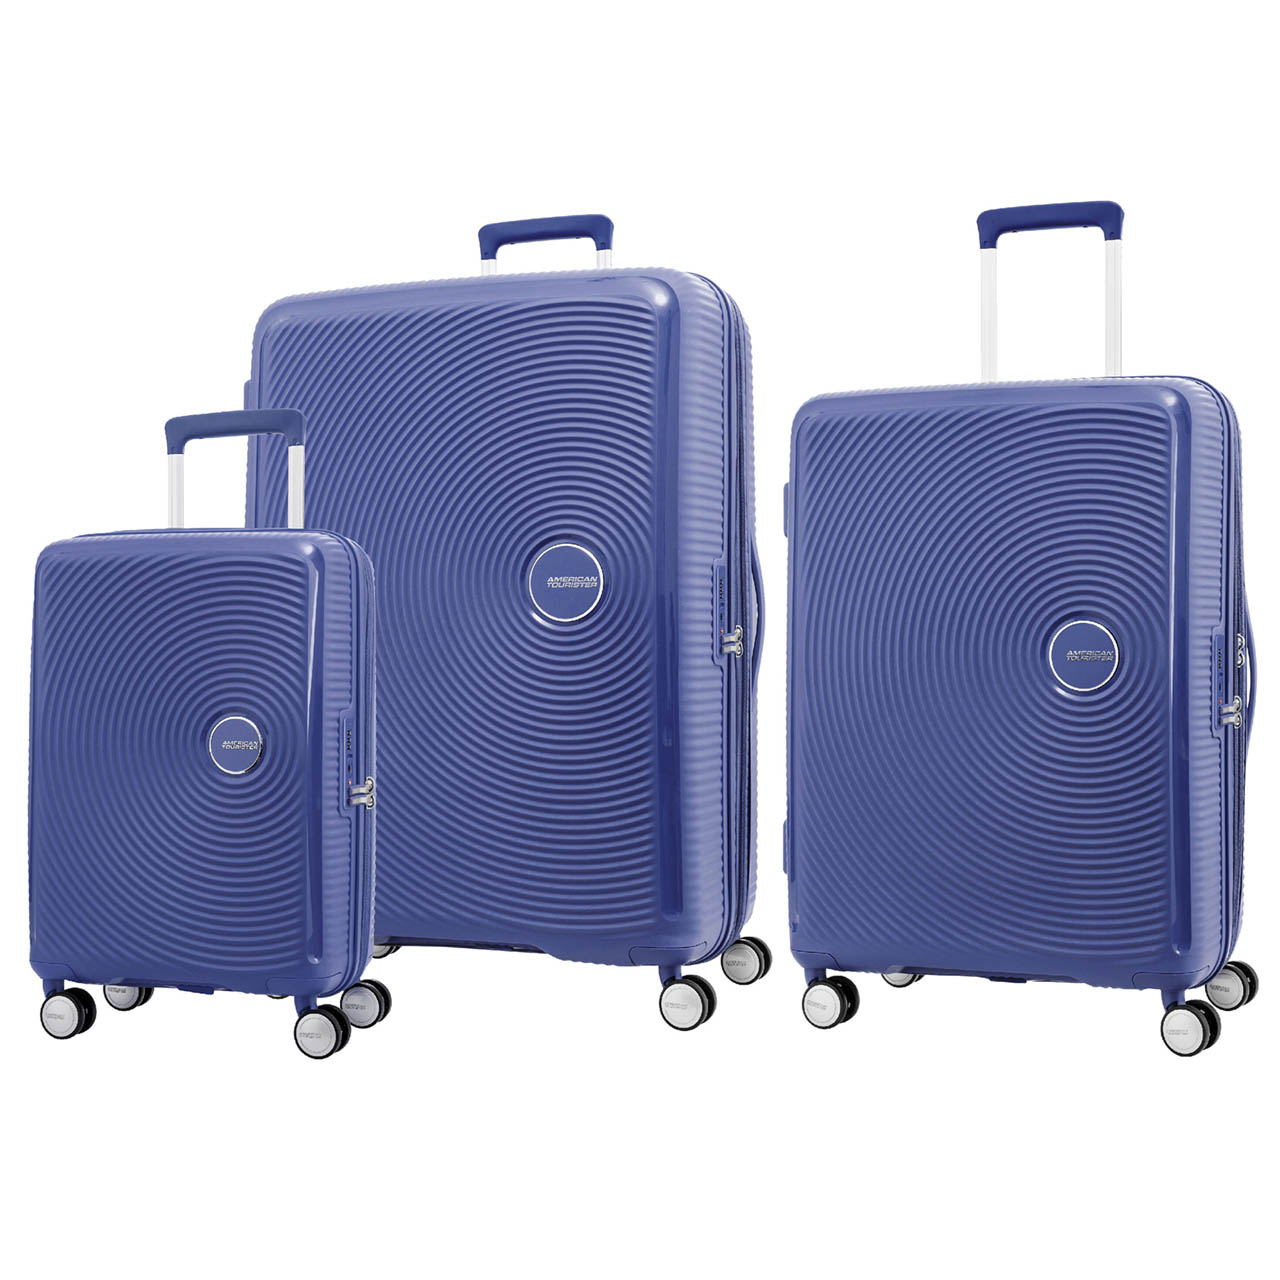 نکته خرید - قیمت روز مجموعه سه عددی چمدان امریکن توریستر مدل CURIO AO8 خرید